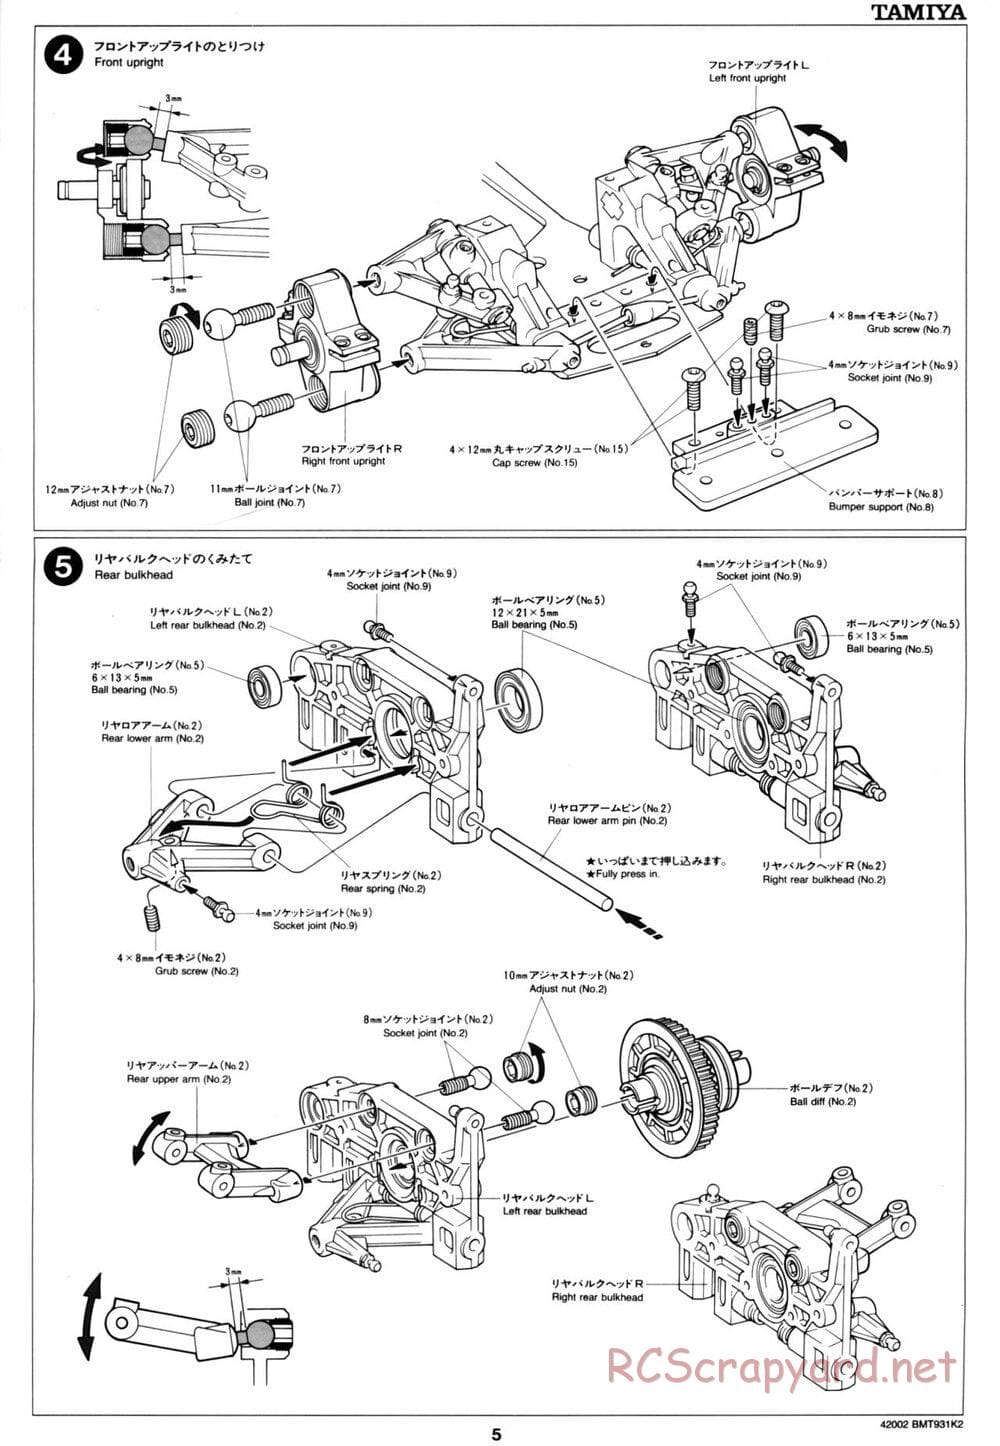 Tamiya - BMT 931 K2 Racing Chassis - Manual - Page 5